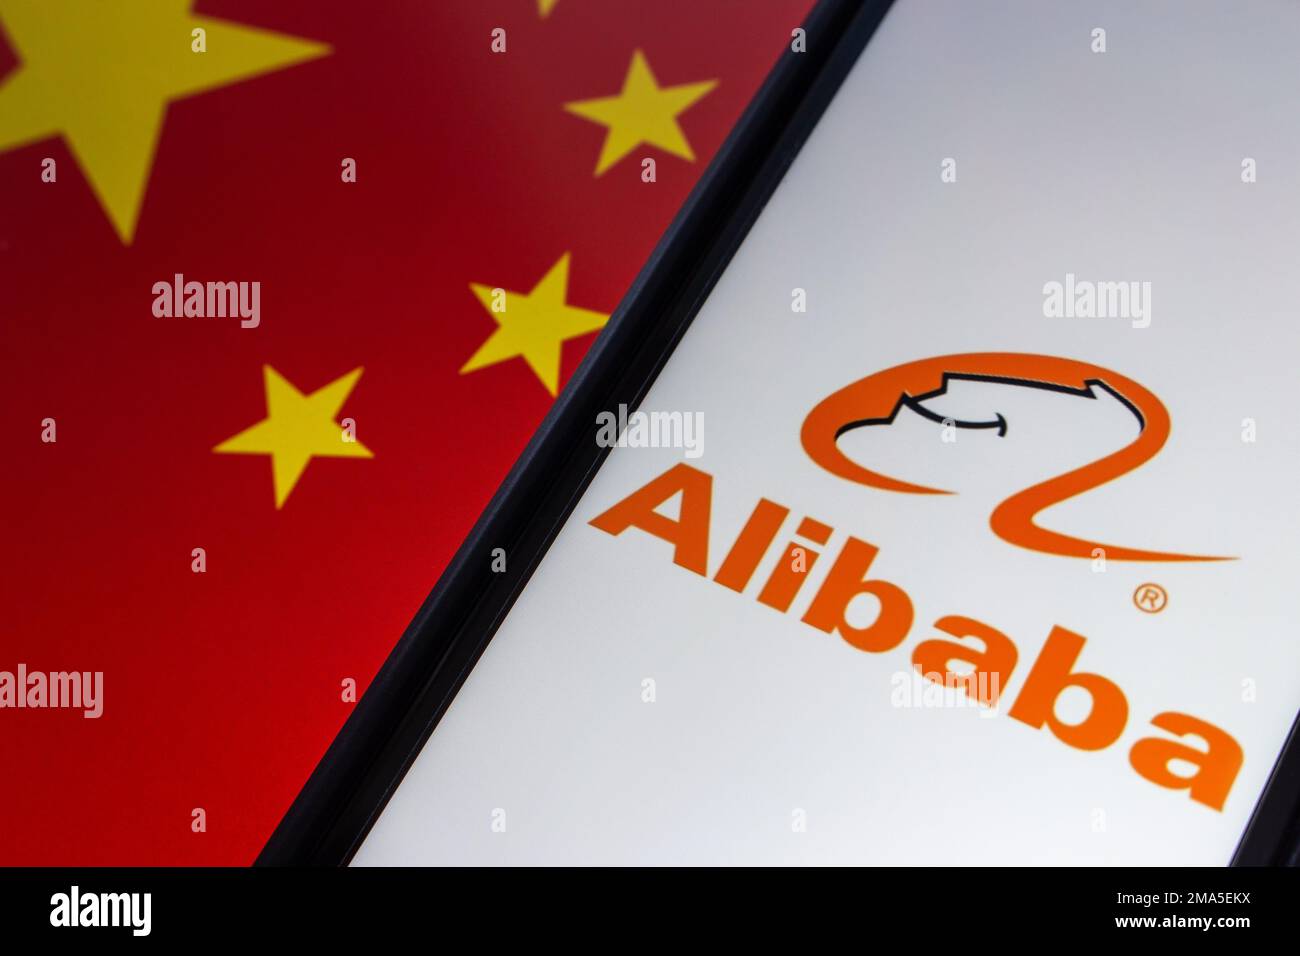 Das Logo von Alibaba auf einem iPhone auf Hintergrund mit chinesischer Flagge. Die Alibaba Group ist ein weltweit größtes Einzelhandels- und E-Commerce-Unternehmen in China. Stockfoto